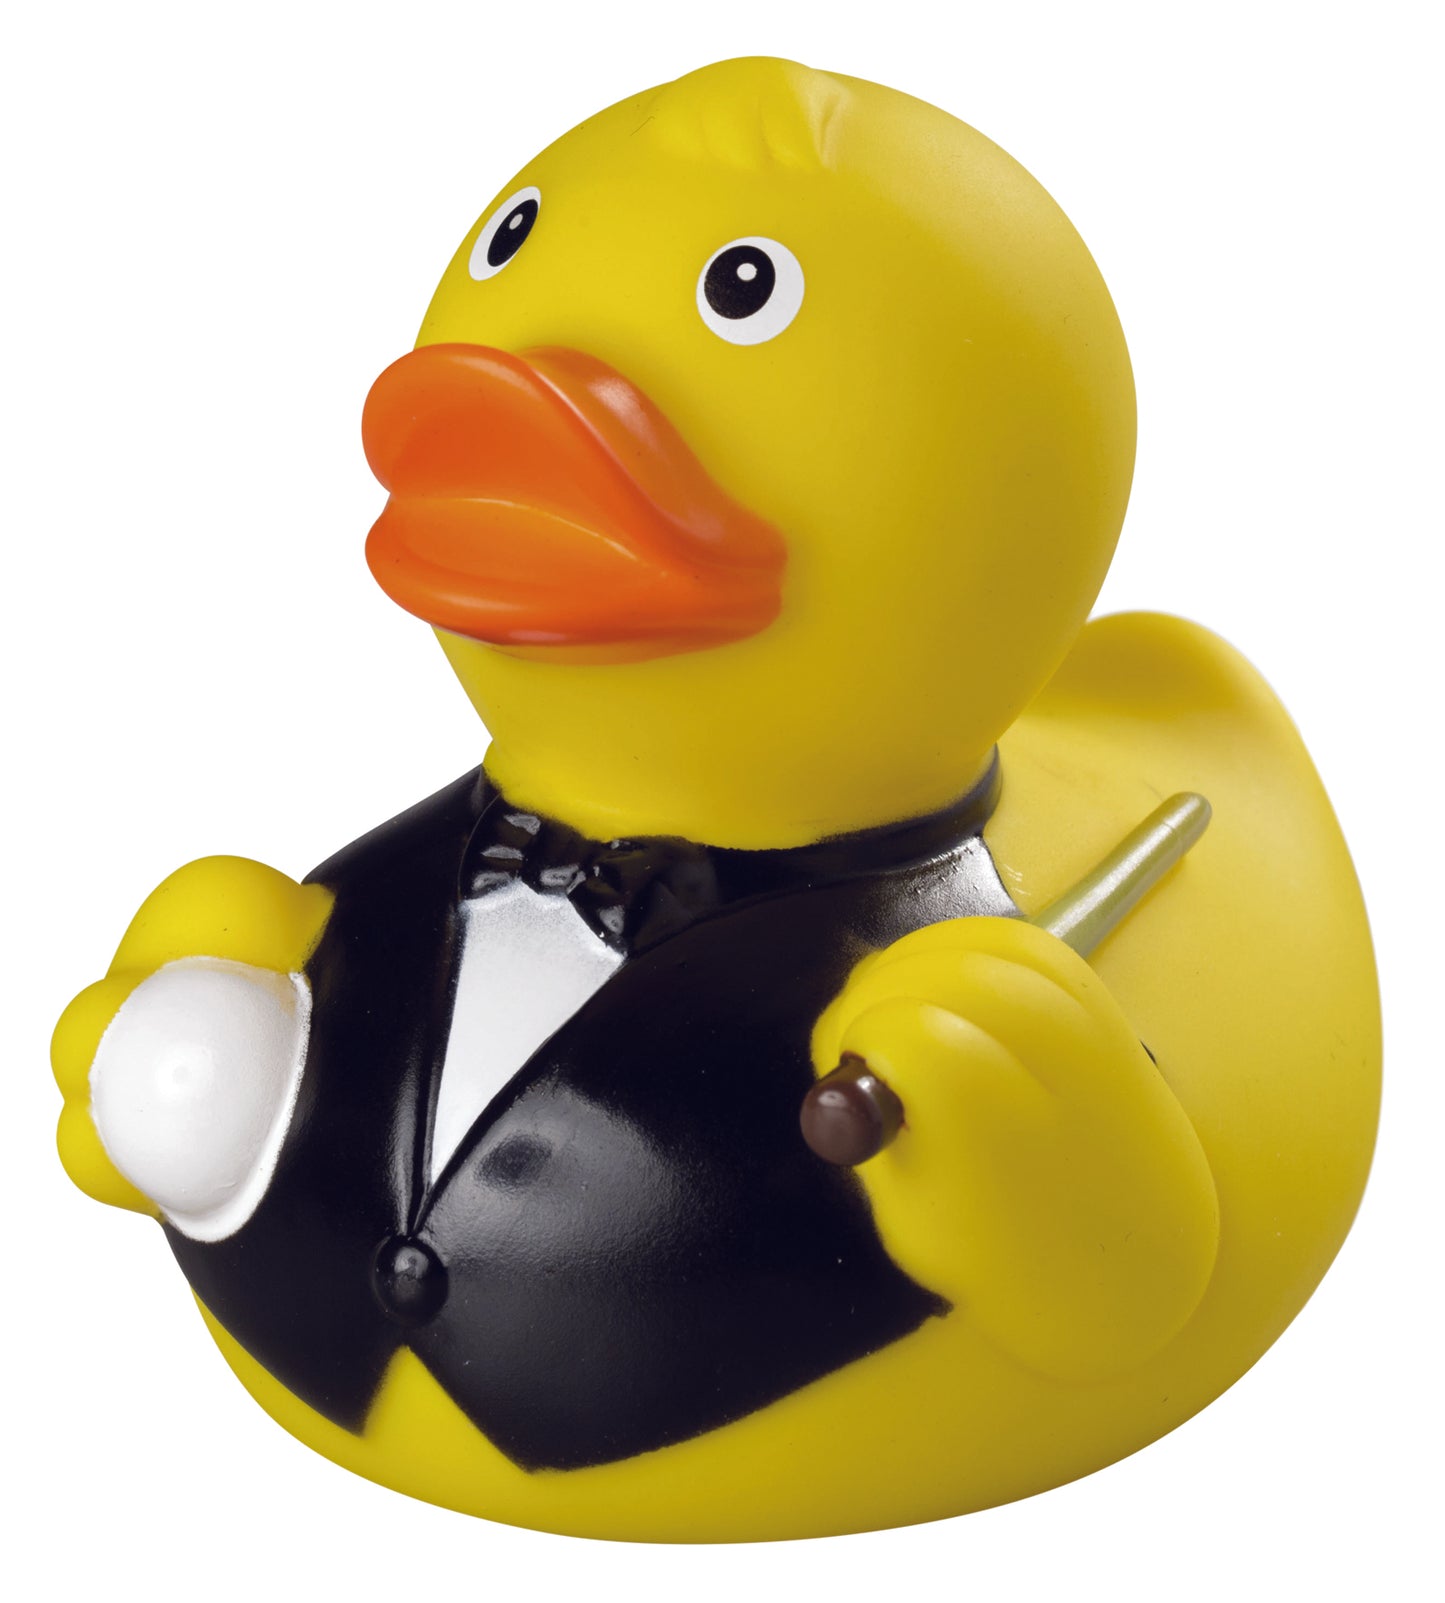 Billiard duck